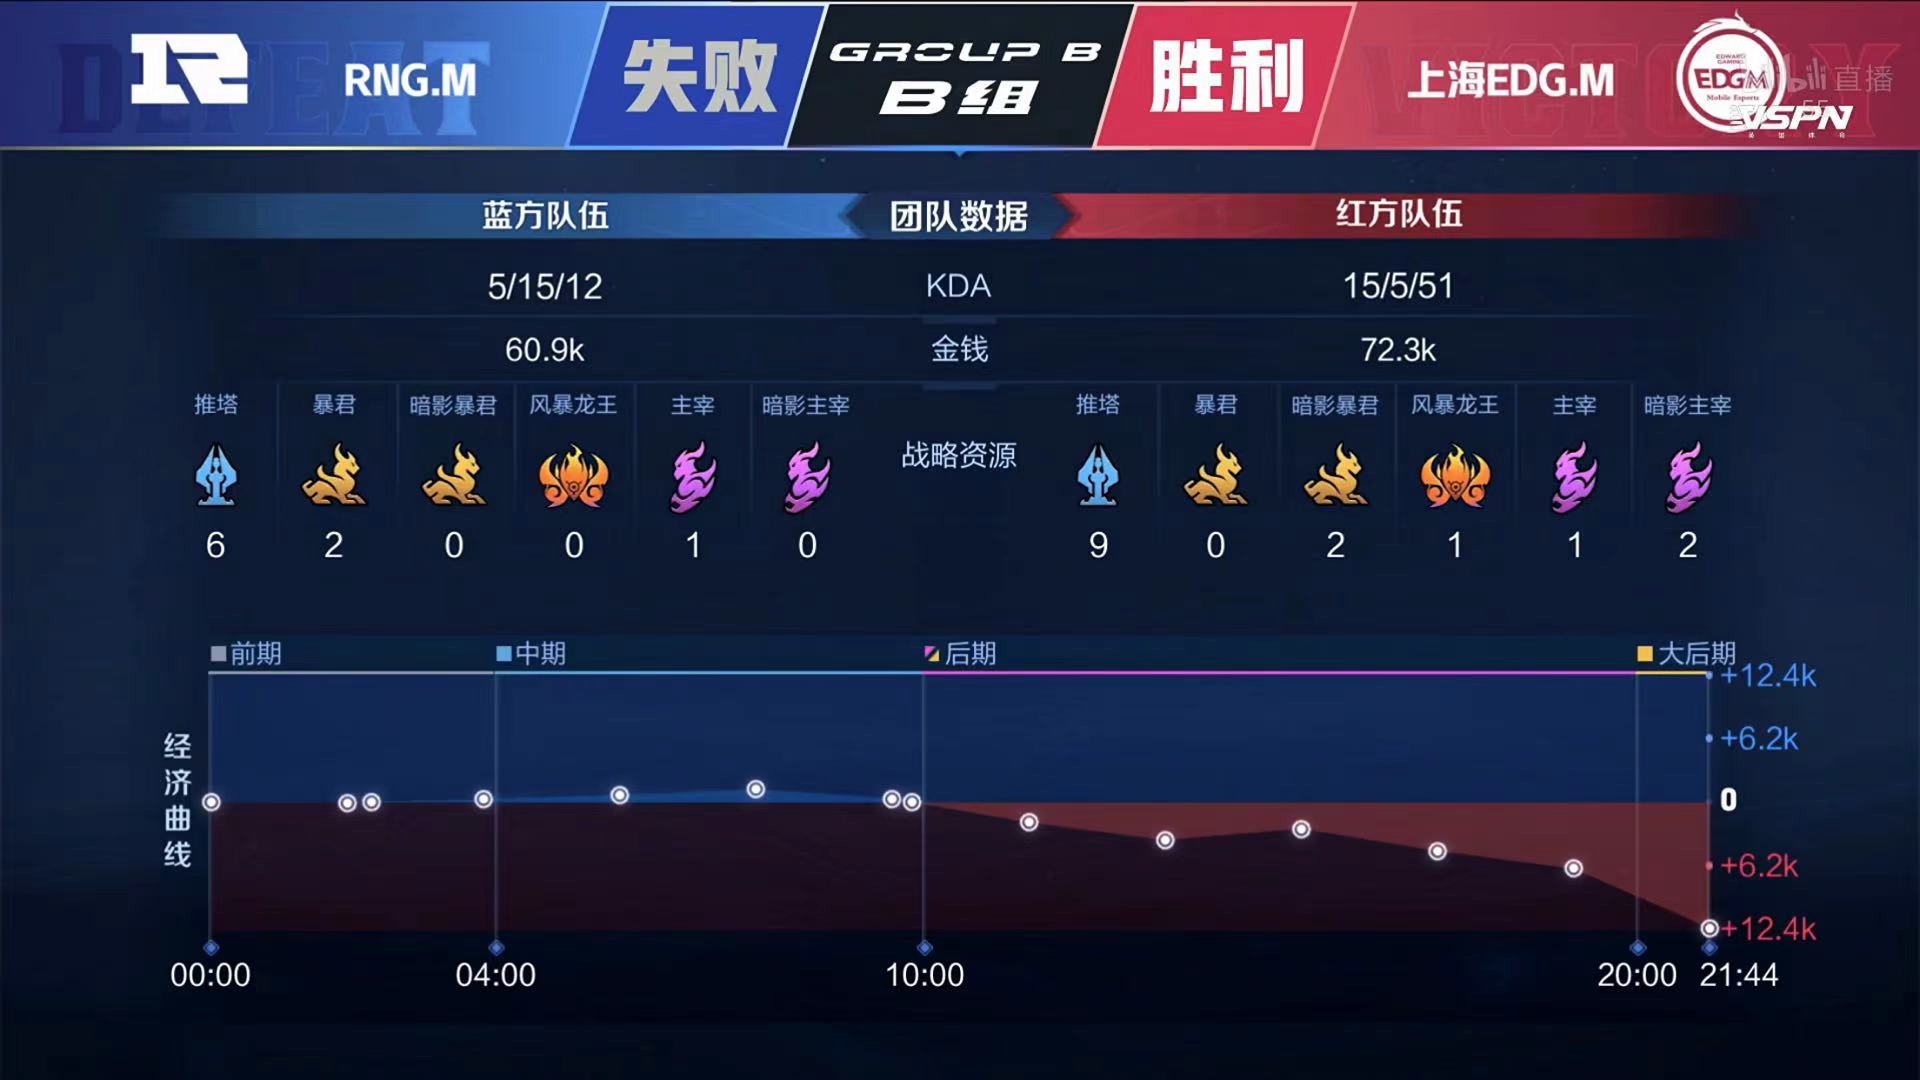 [战报] 上海EDG.M零封RNG.M 拿到B组首个积分！